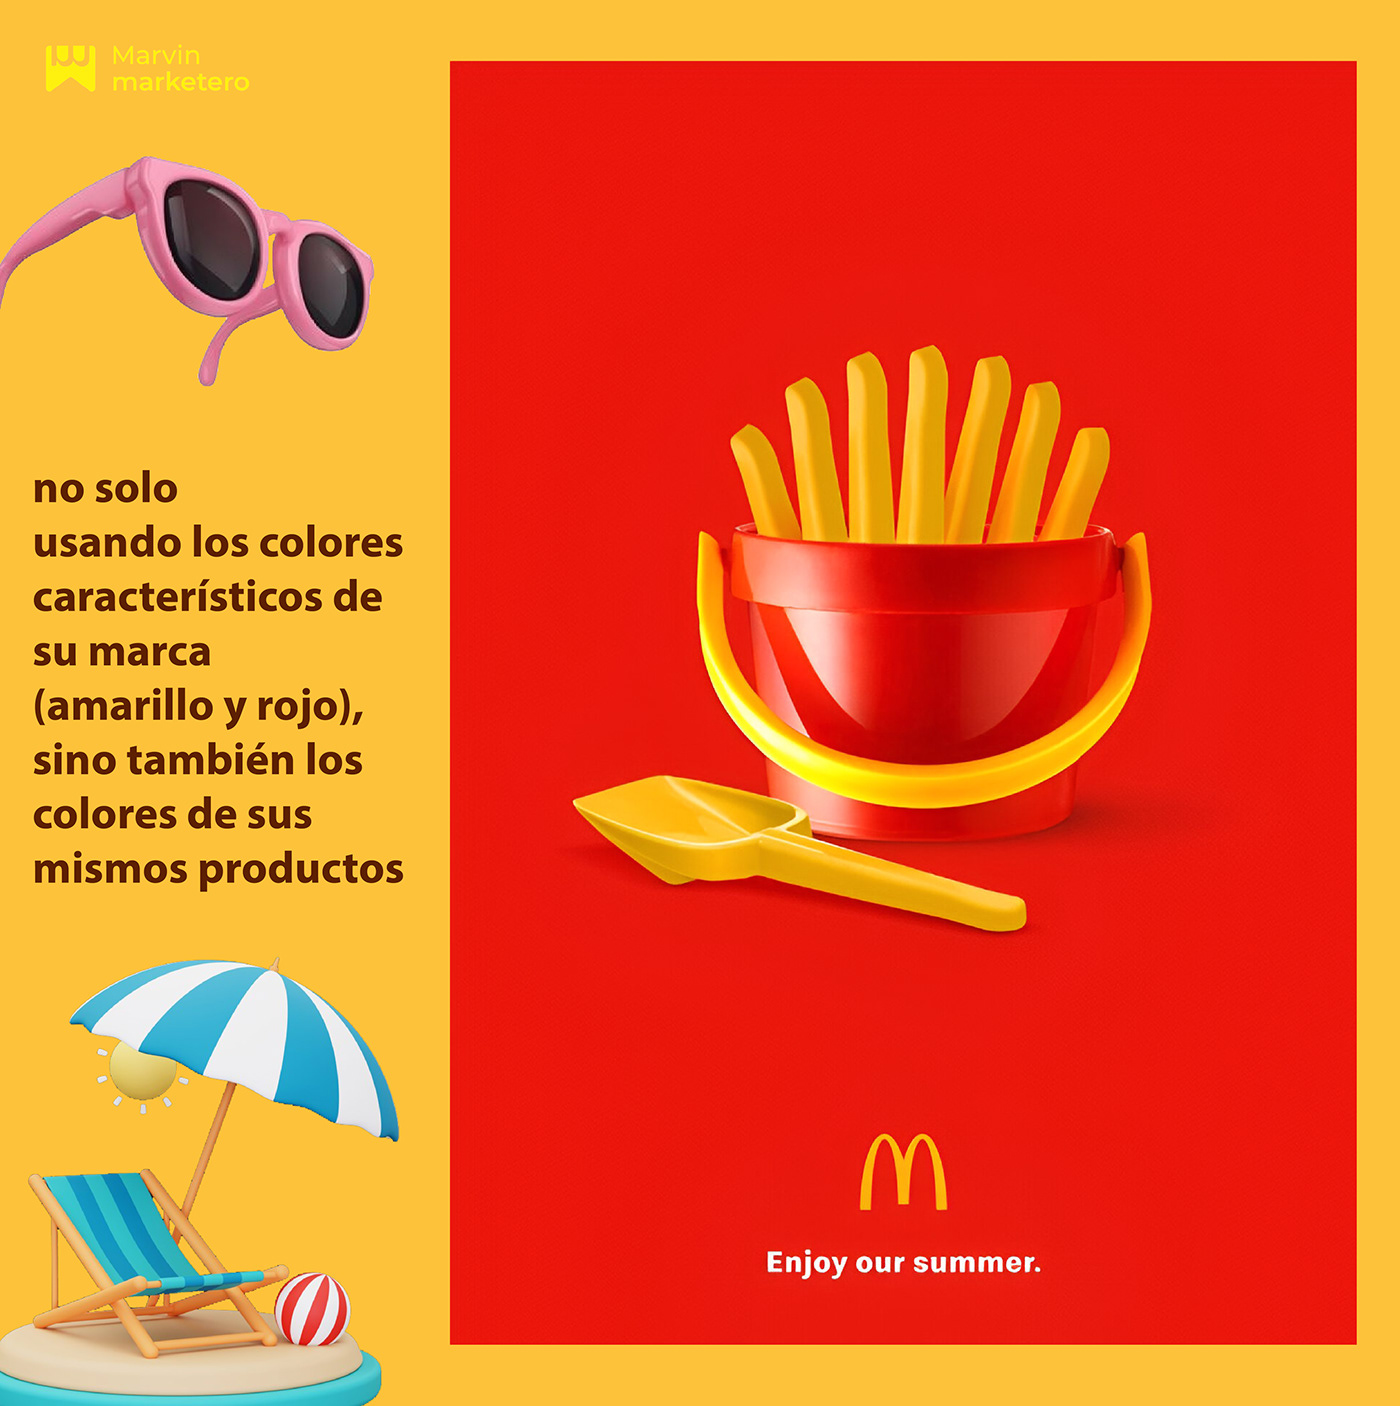 McDonalds publicidad Anuncios Publicitarios Campañas de Publicidad marketing   diseño gráfico Concepto creativo anuncios creativos diseño creativo Publicidad creativa